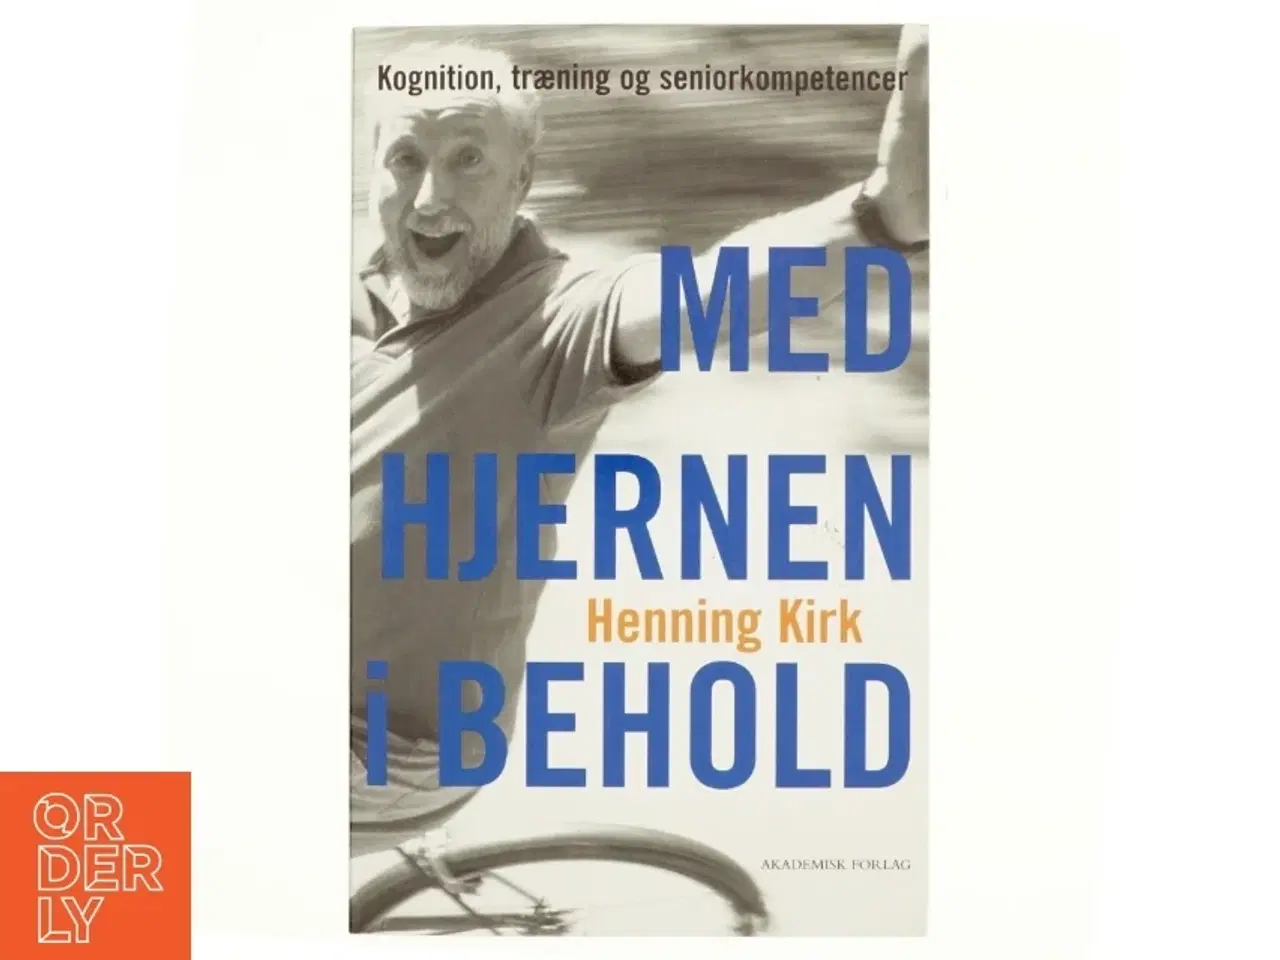 Billede 1 - Med hjernen i behold : kognition, træning og seniorkompetencer af Henning Kirk (Bog)